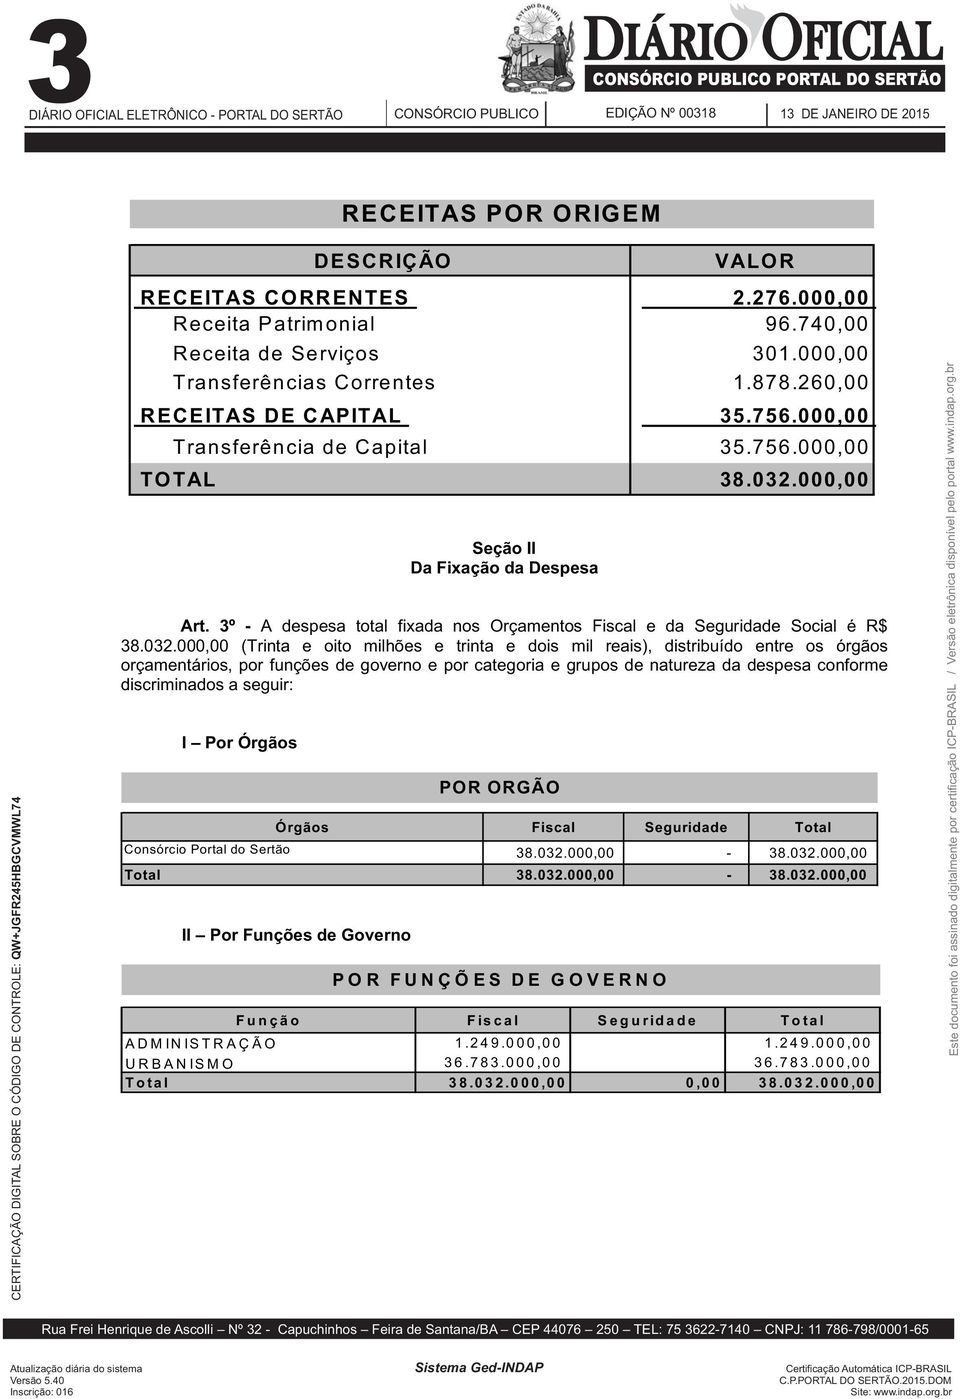 3º - A despesa total fixada nos Orçamentos Fiscal e da Seguridade Social é R$ 38.032.